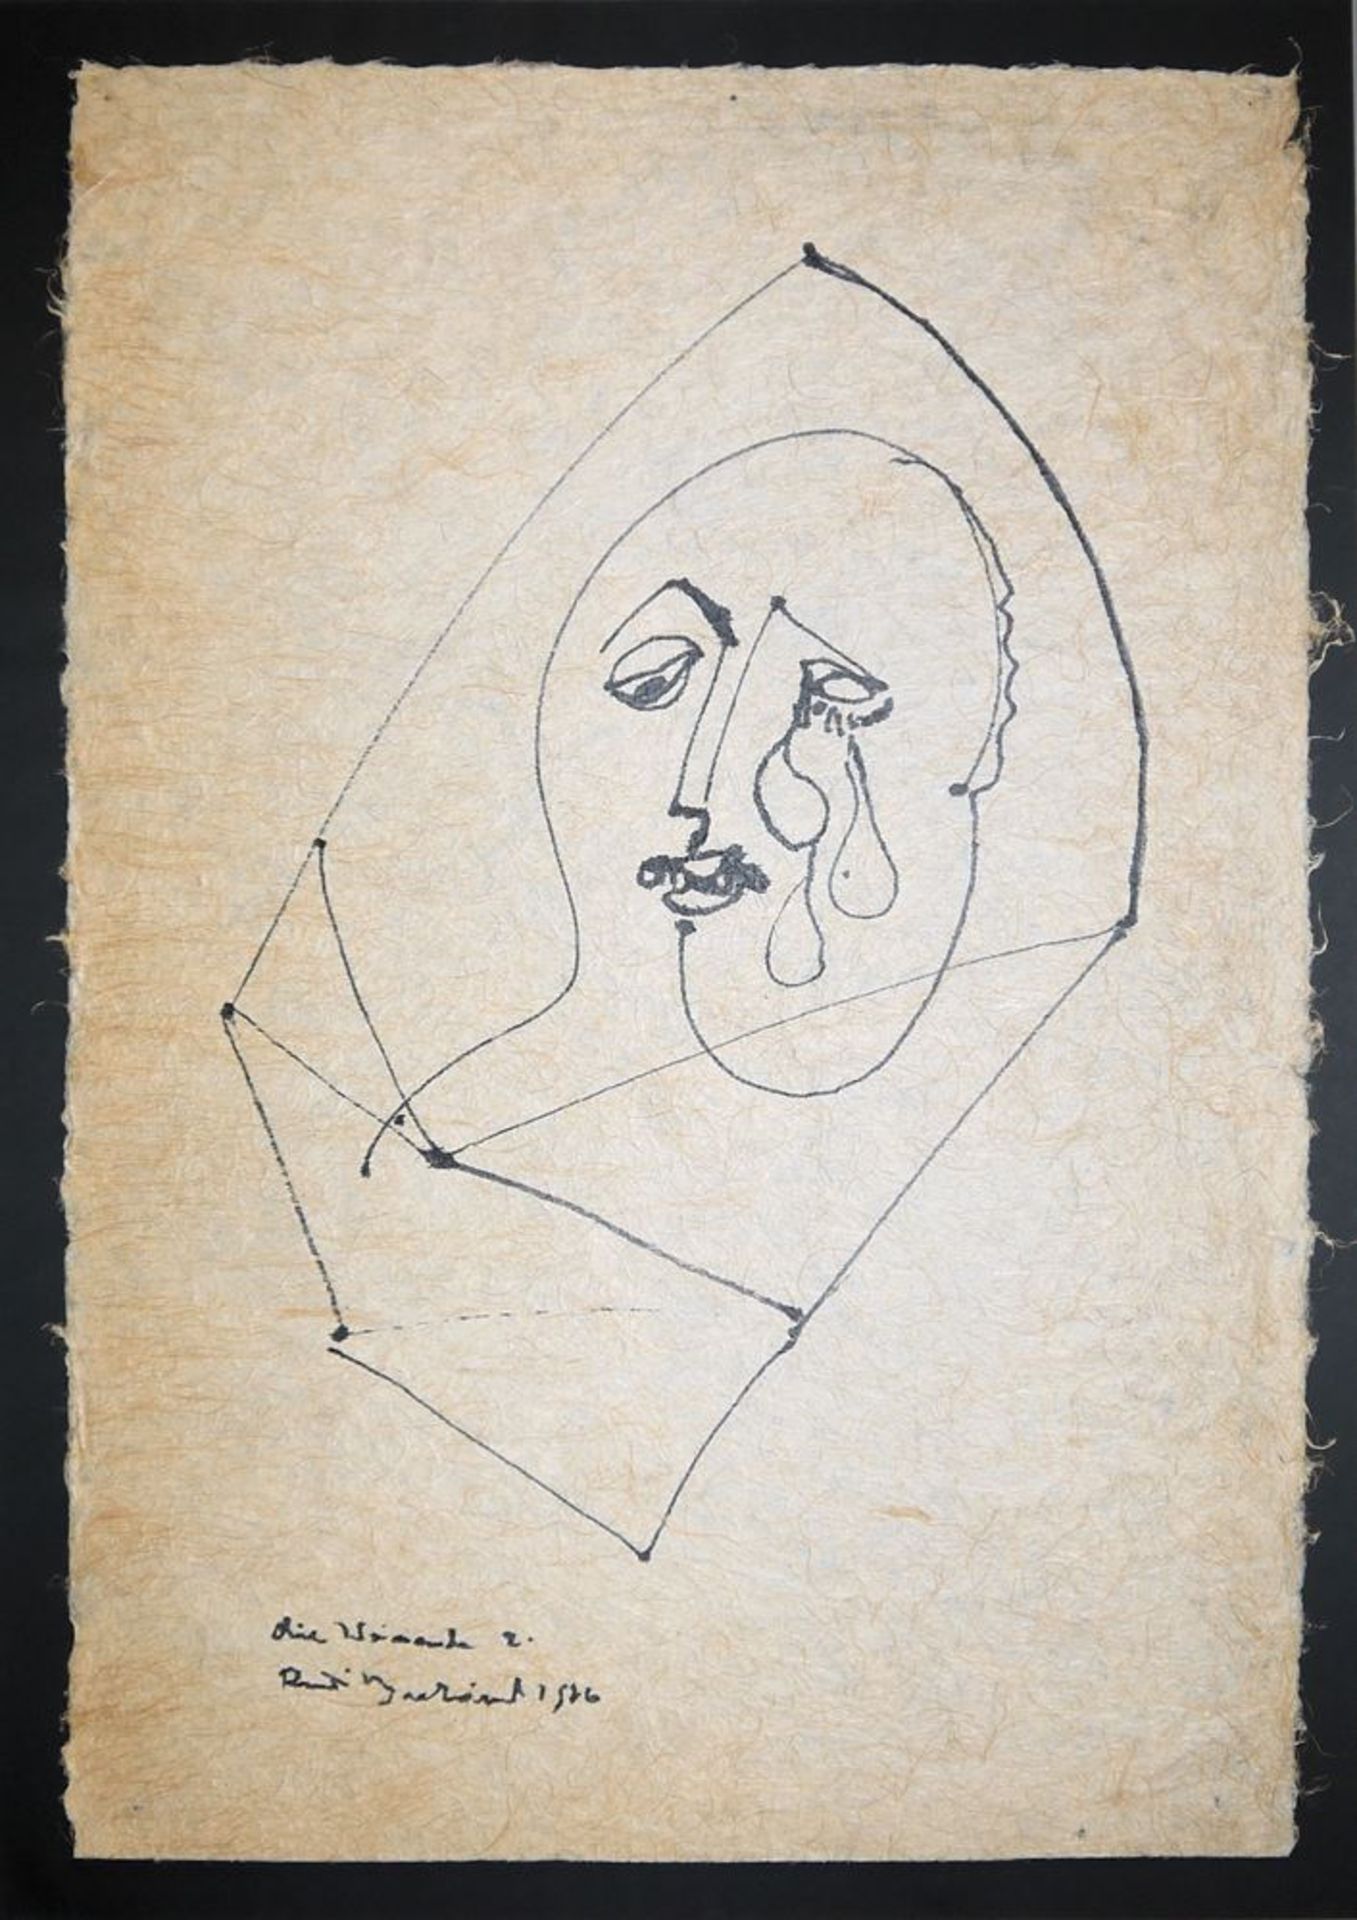 Rudi Baerwind, "Die Weinende", picassoeske Tuschzeichnung von 1956